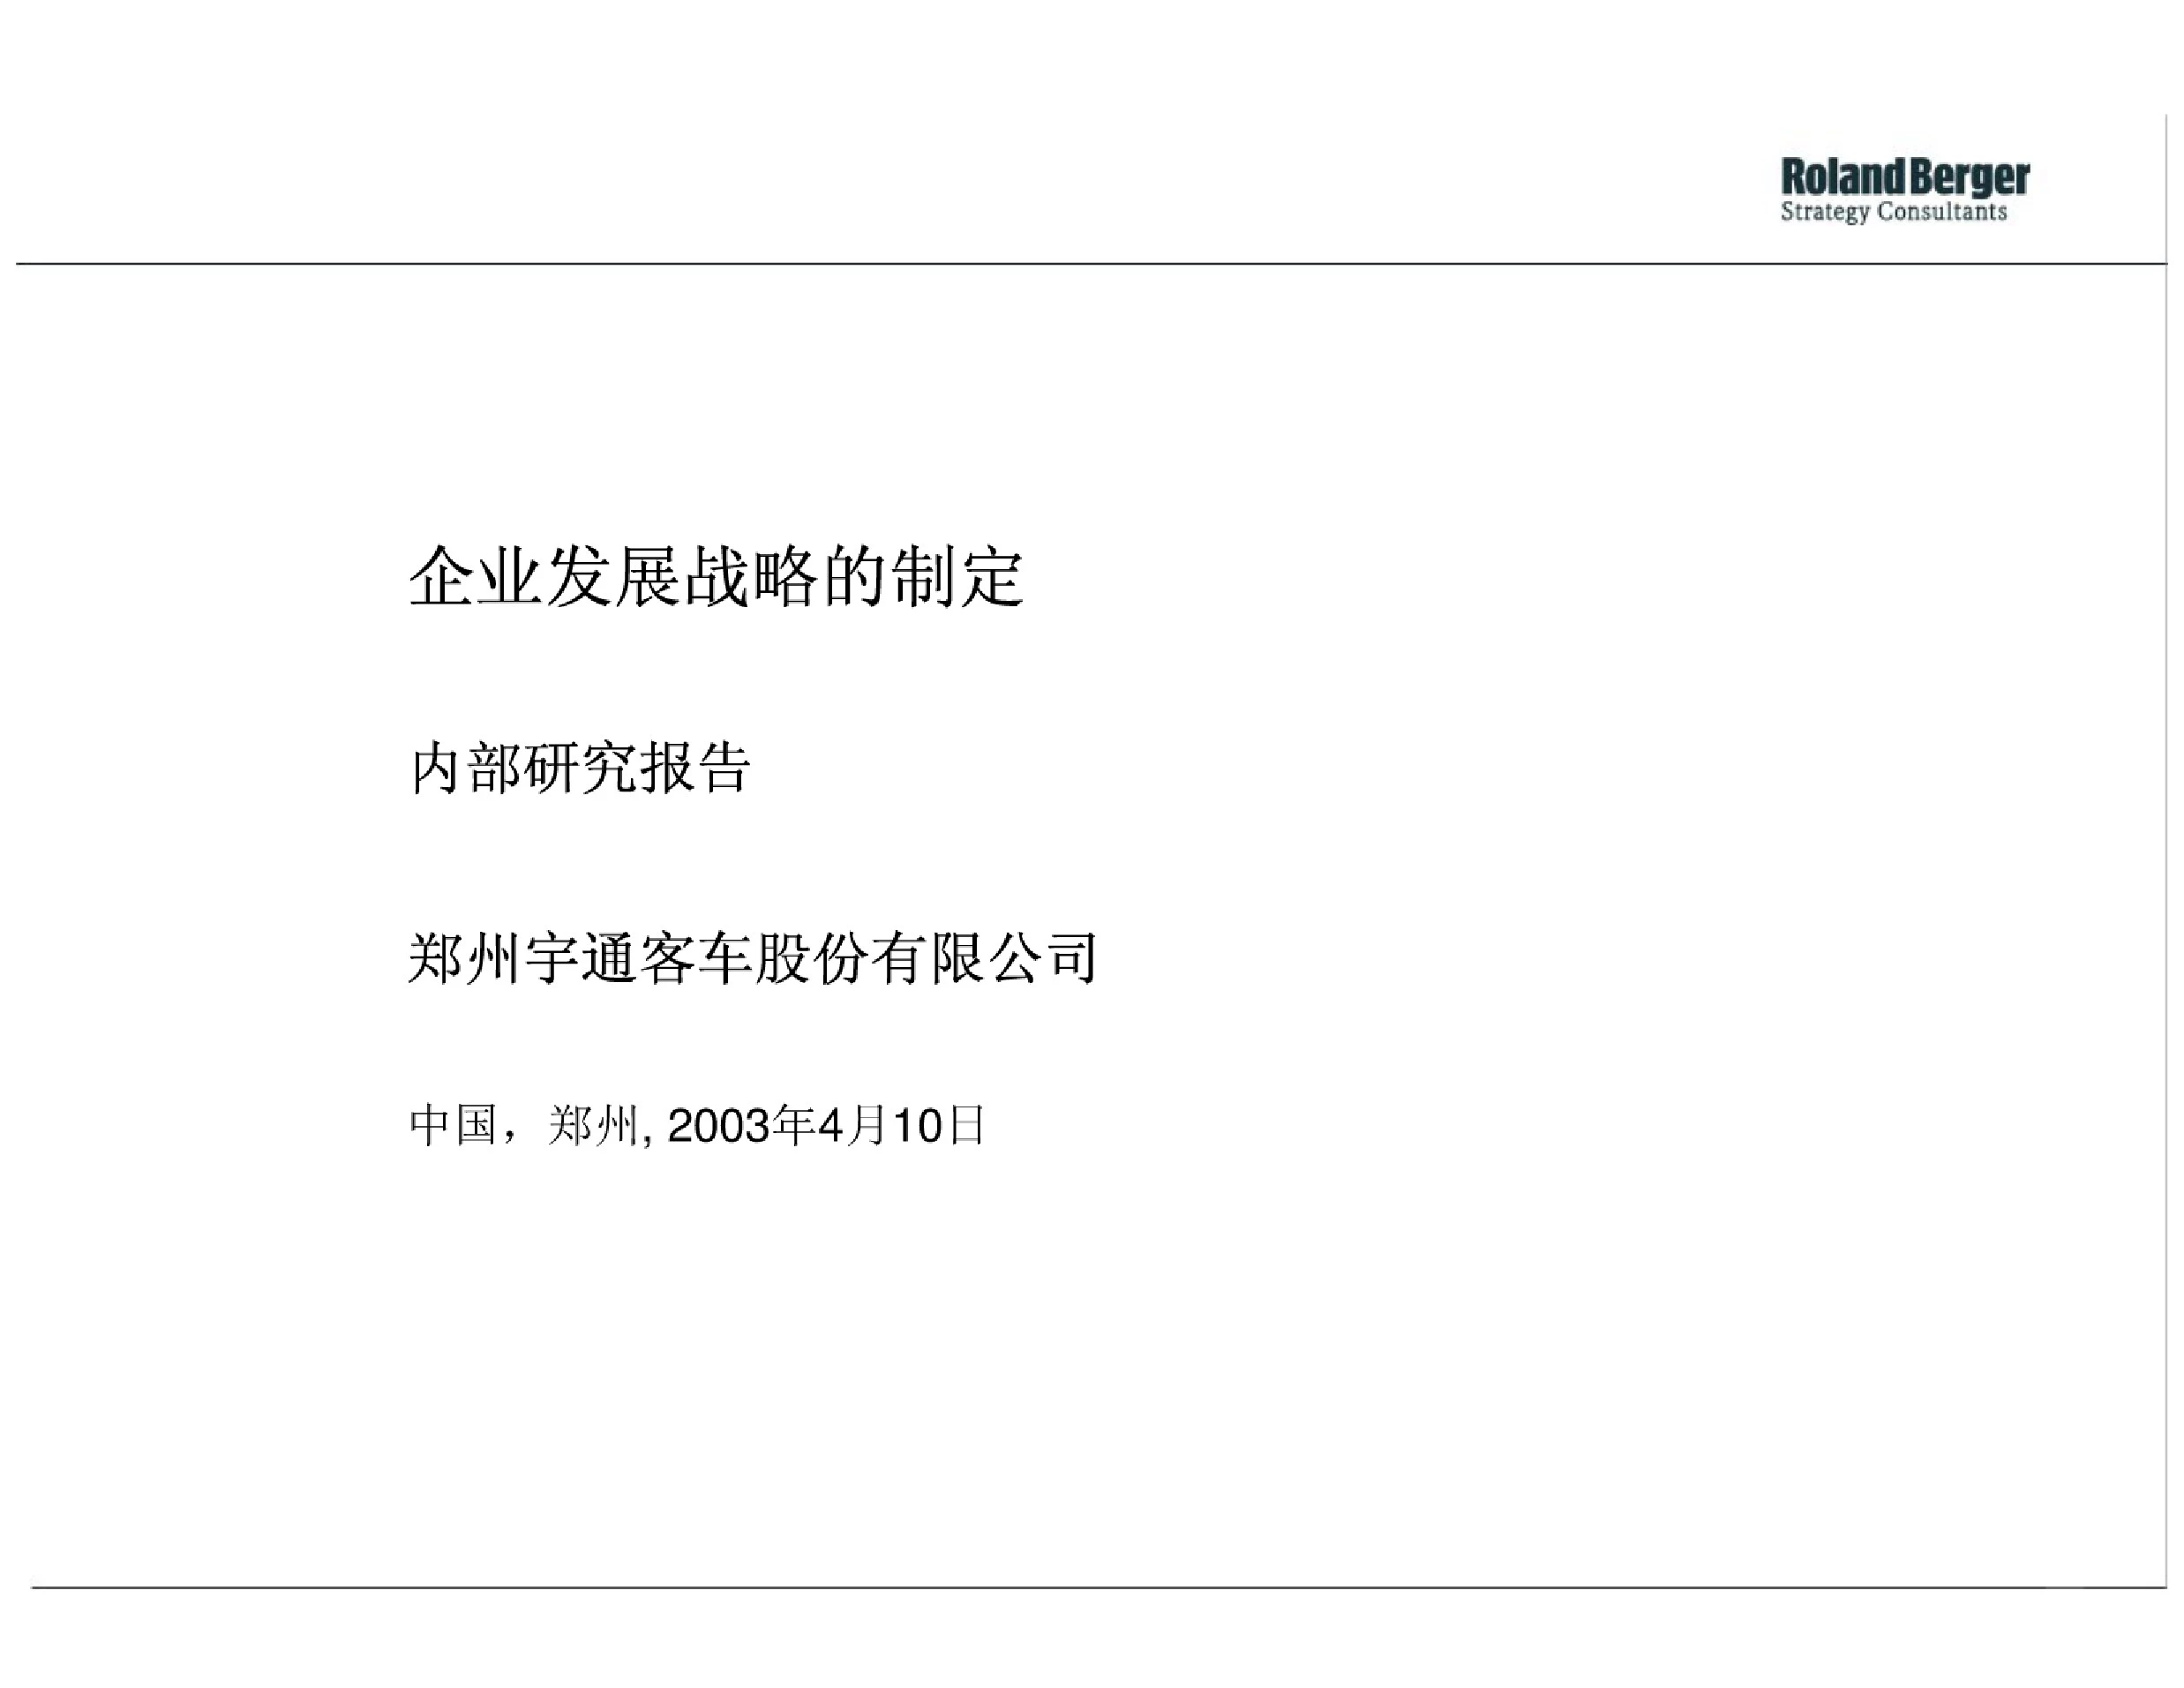 罗兰_贝格：郑州宇通客车股份有限公司企业发展战略的制定内部研究报告